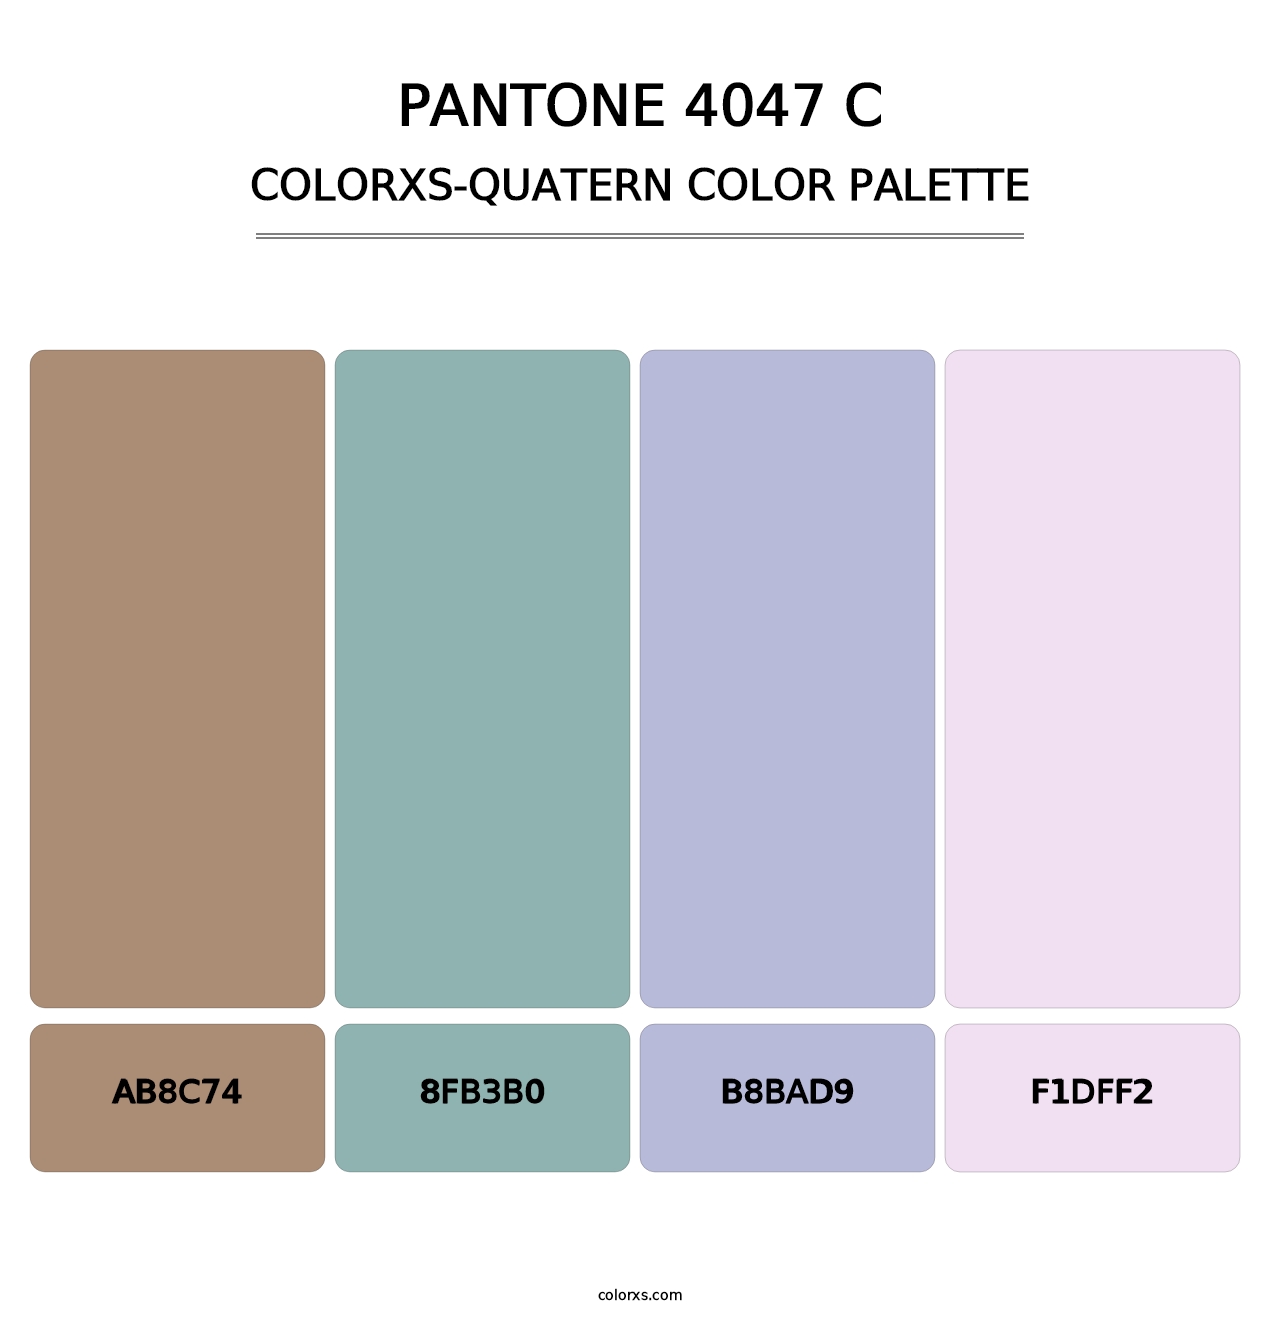 PANTONE 4047 C - Colorxs Quatern Palette